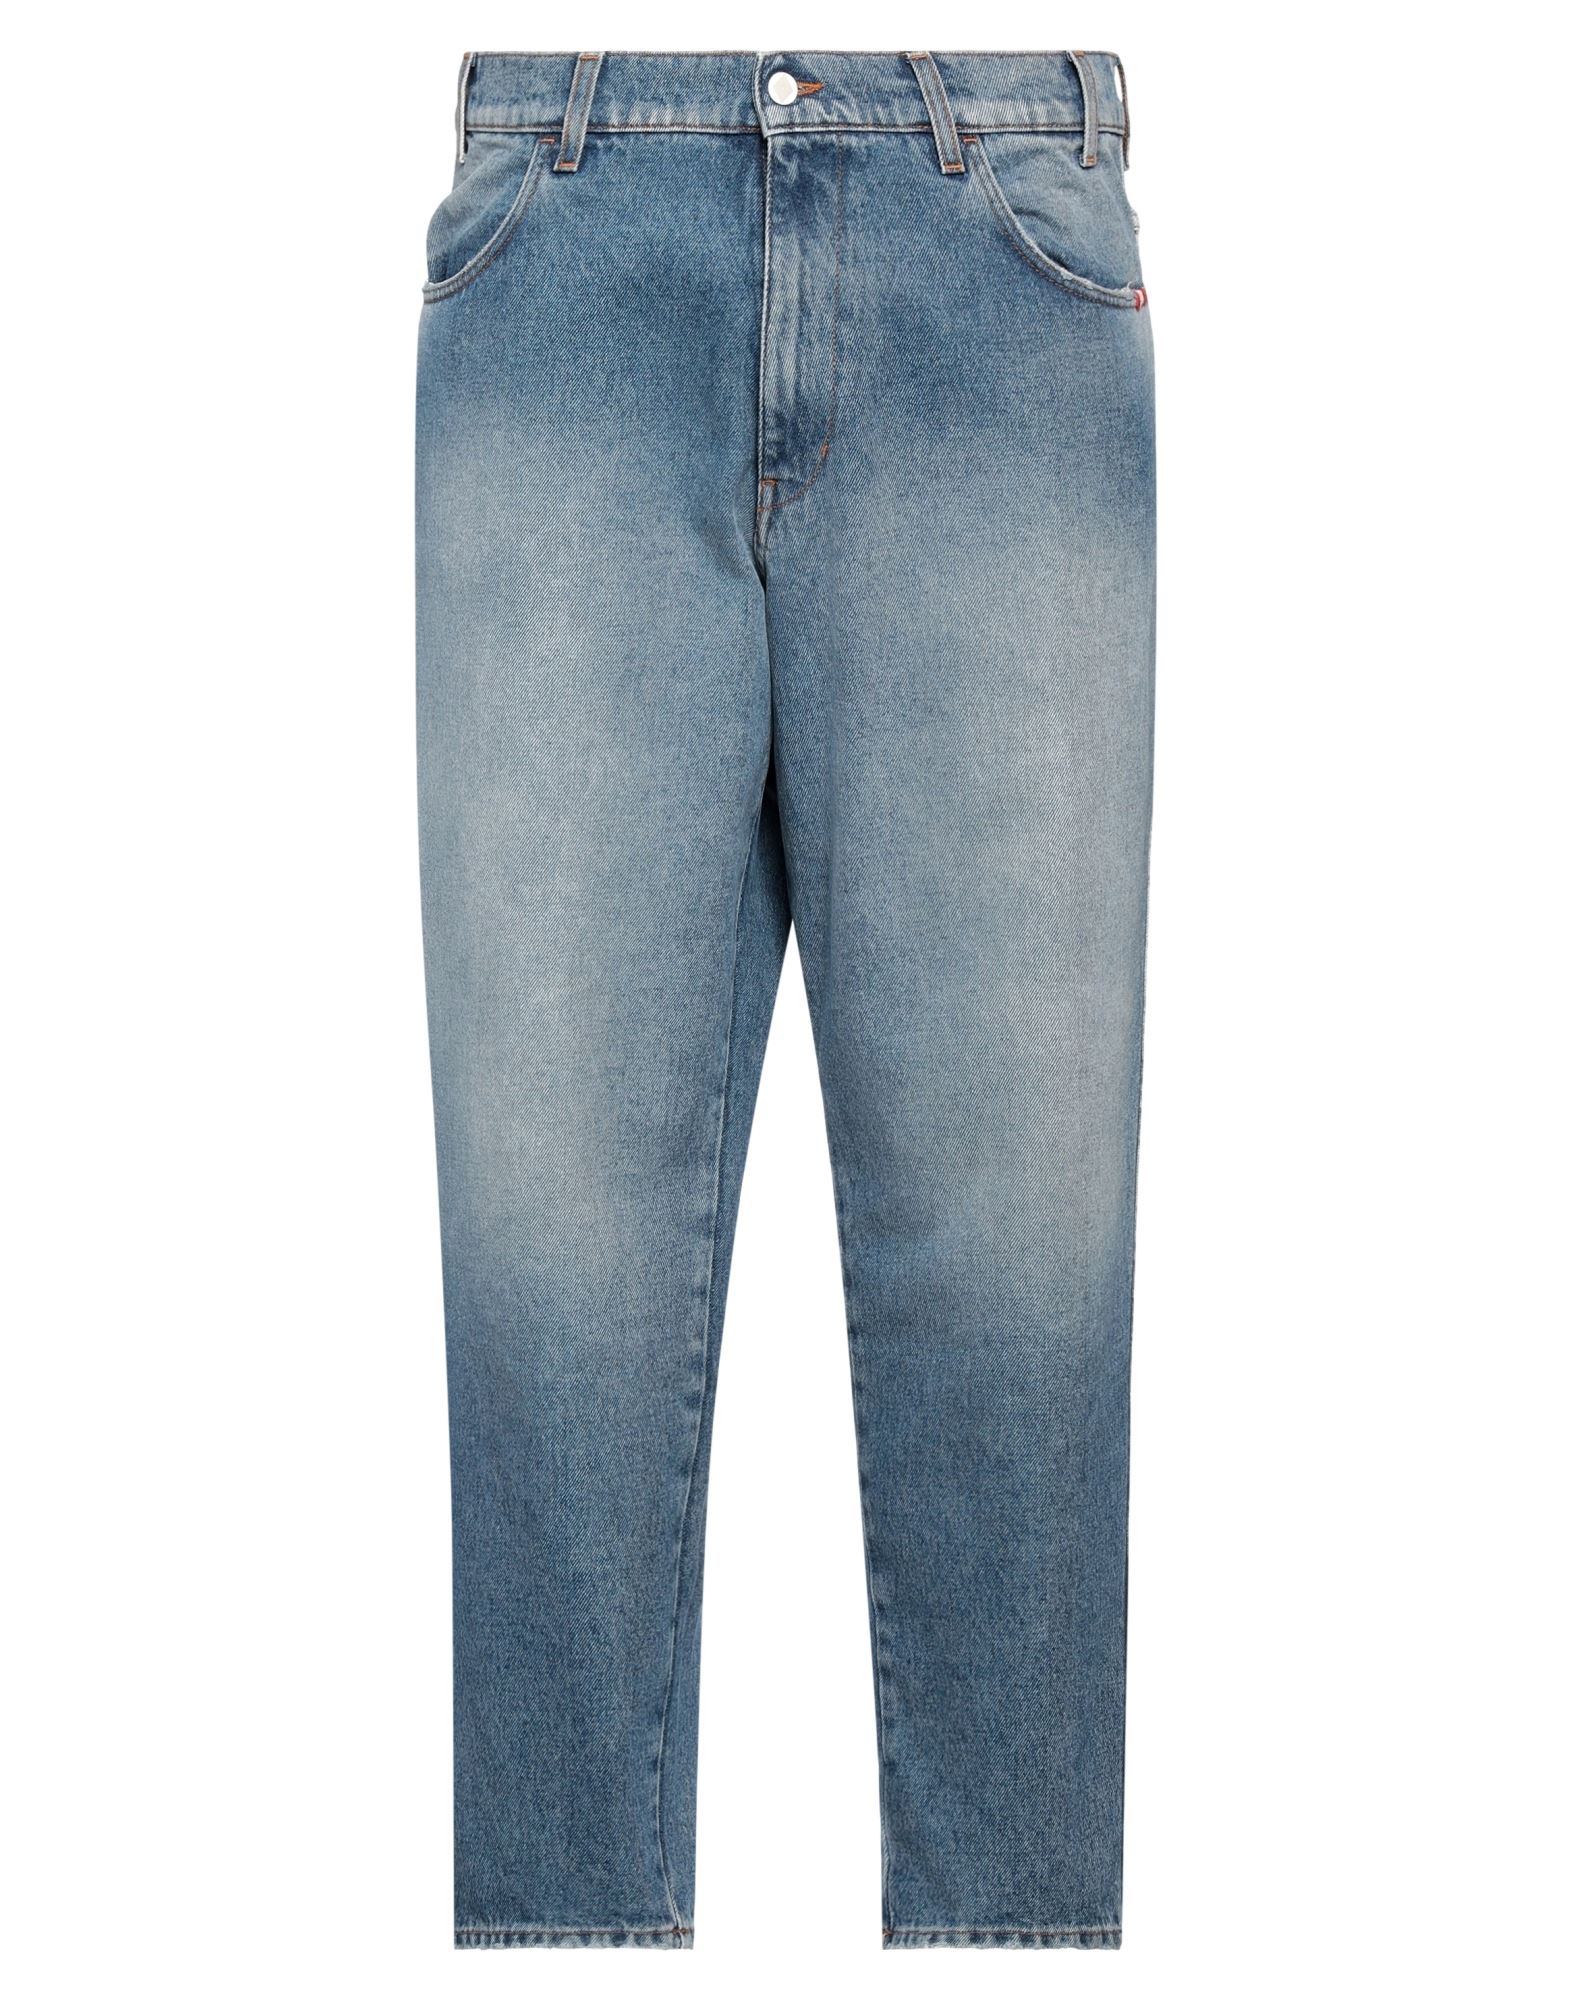 Shop Amish Man Jeans Blue Size 31 Cotton